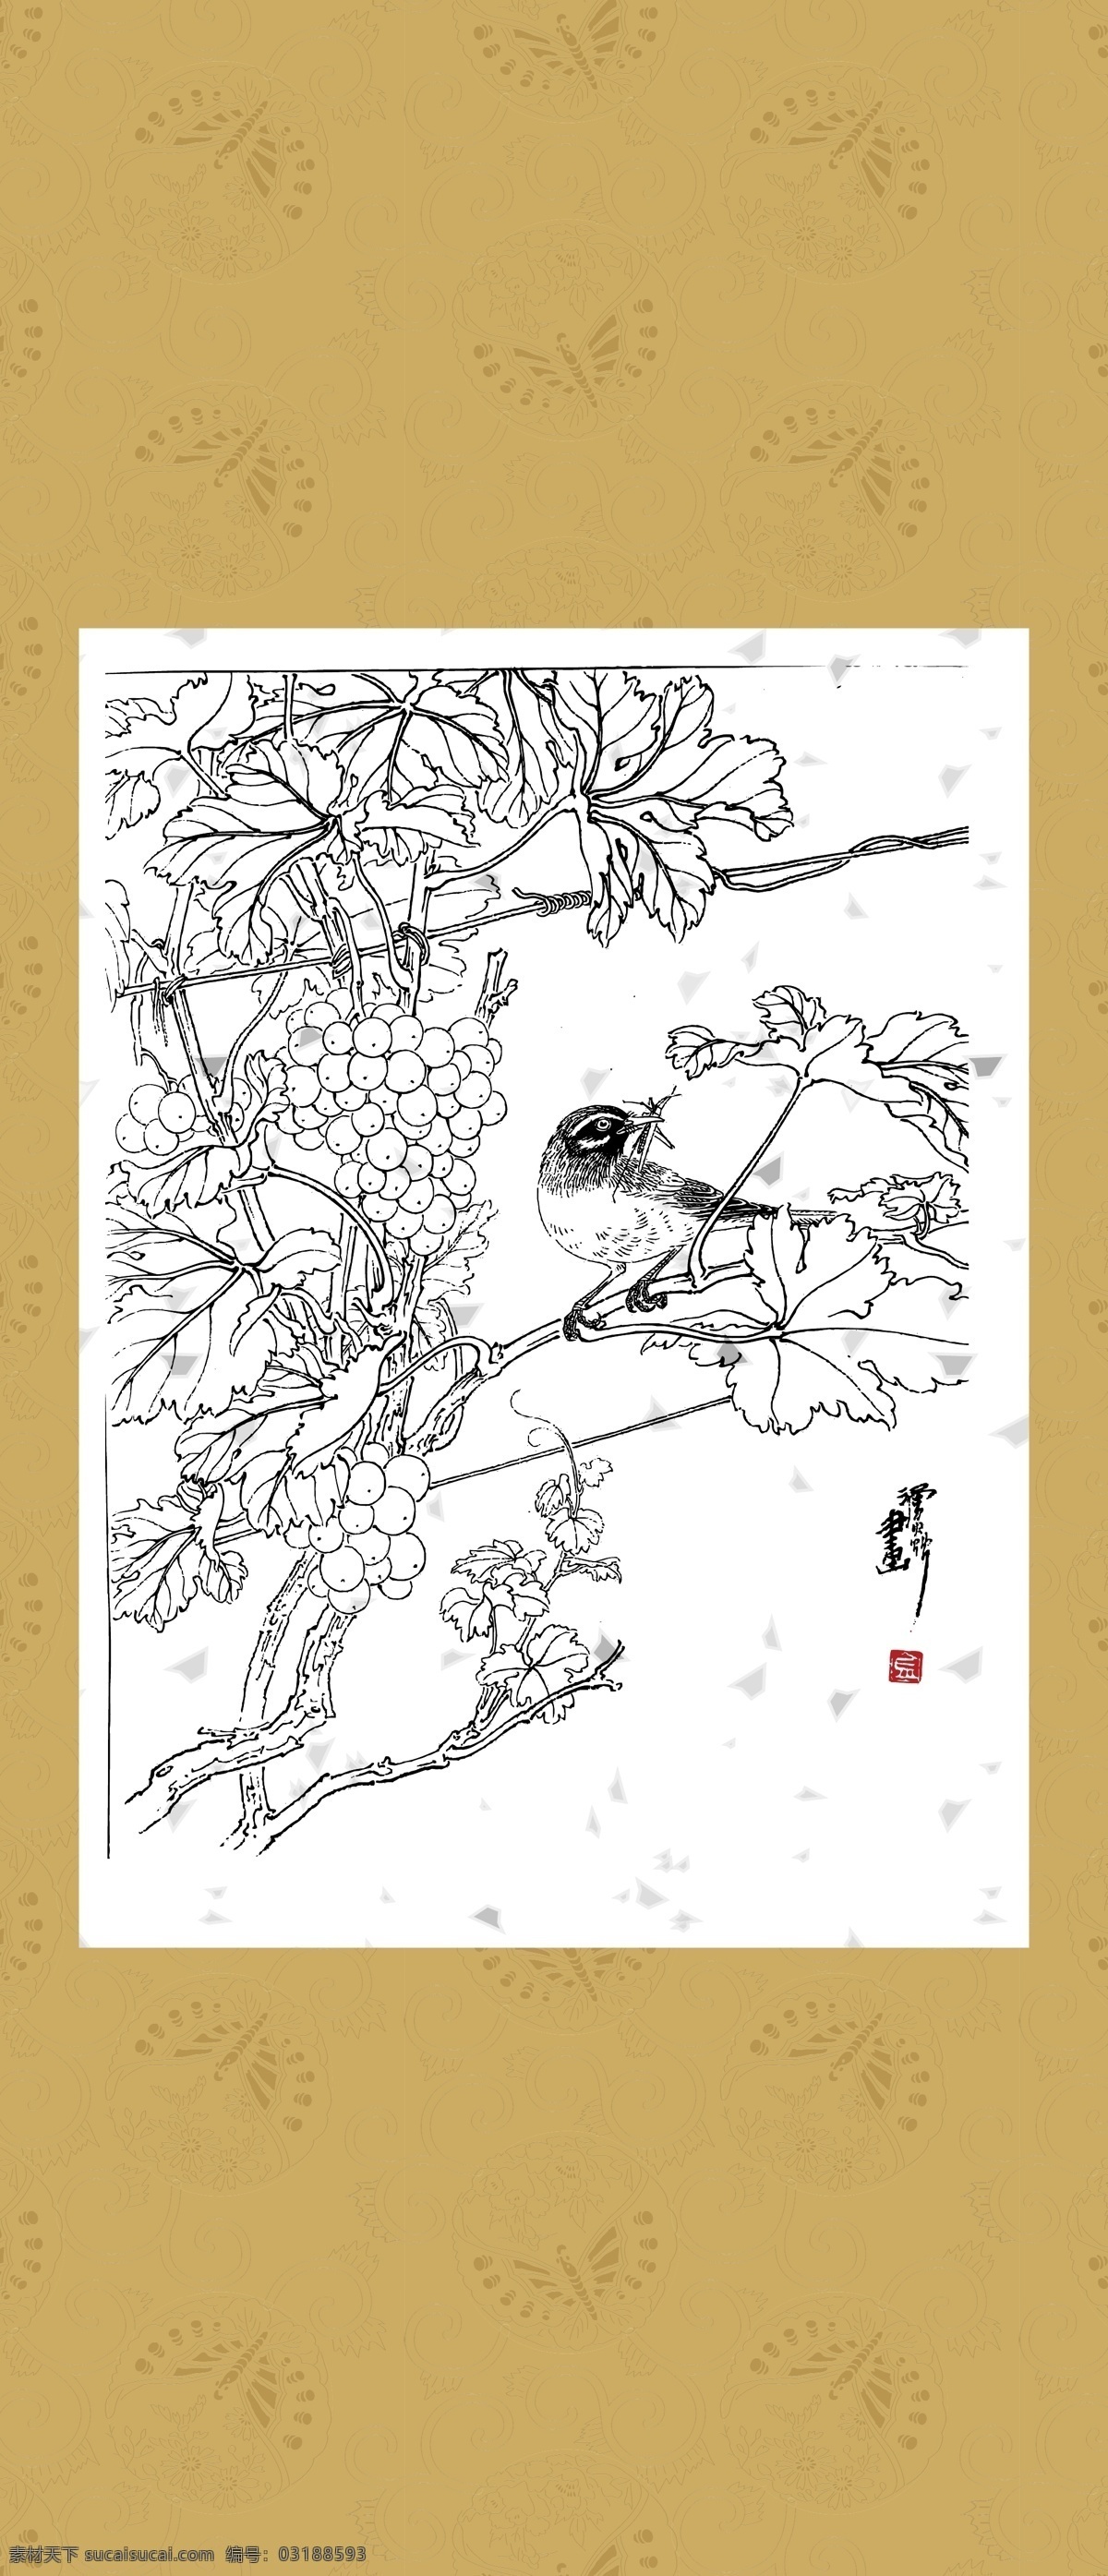 花鸟 系列 三 十 二 花边 工笔 国画 白描 线描 团花 绘画 古典 传统纹样 传统文化 文化艺术 矢量